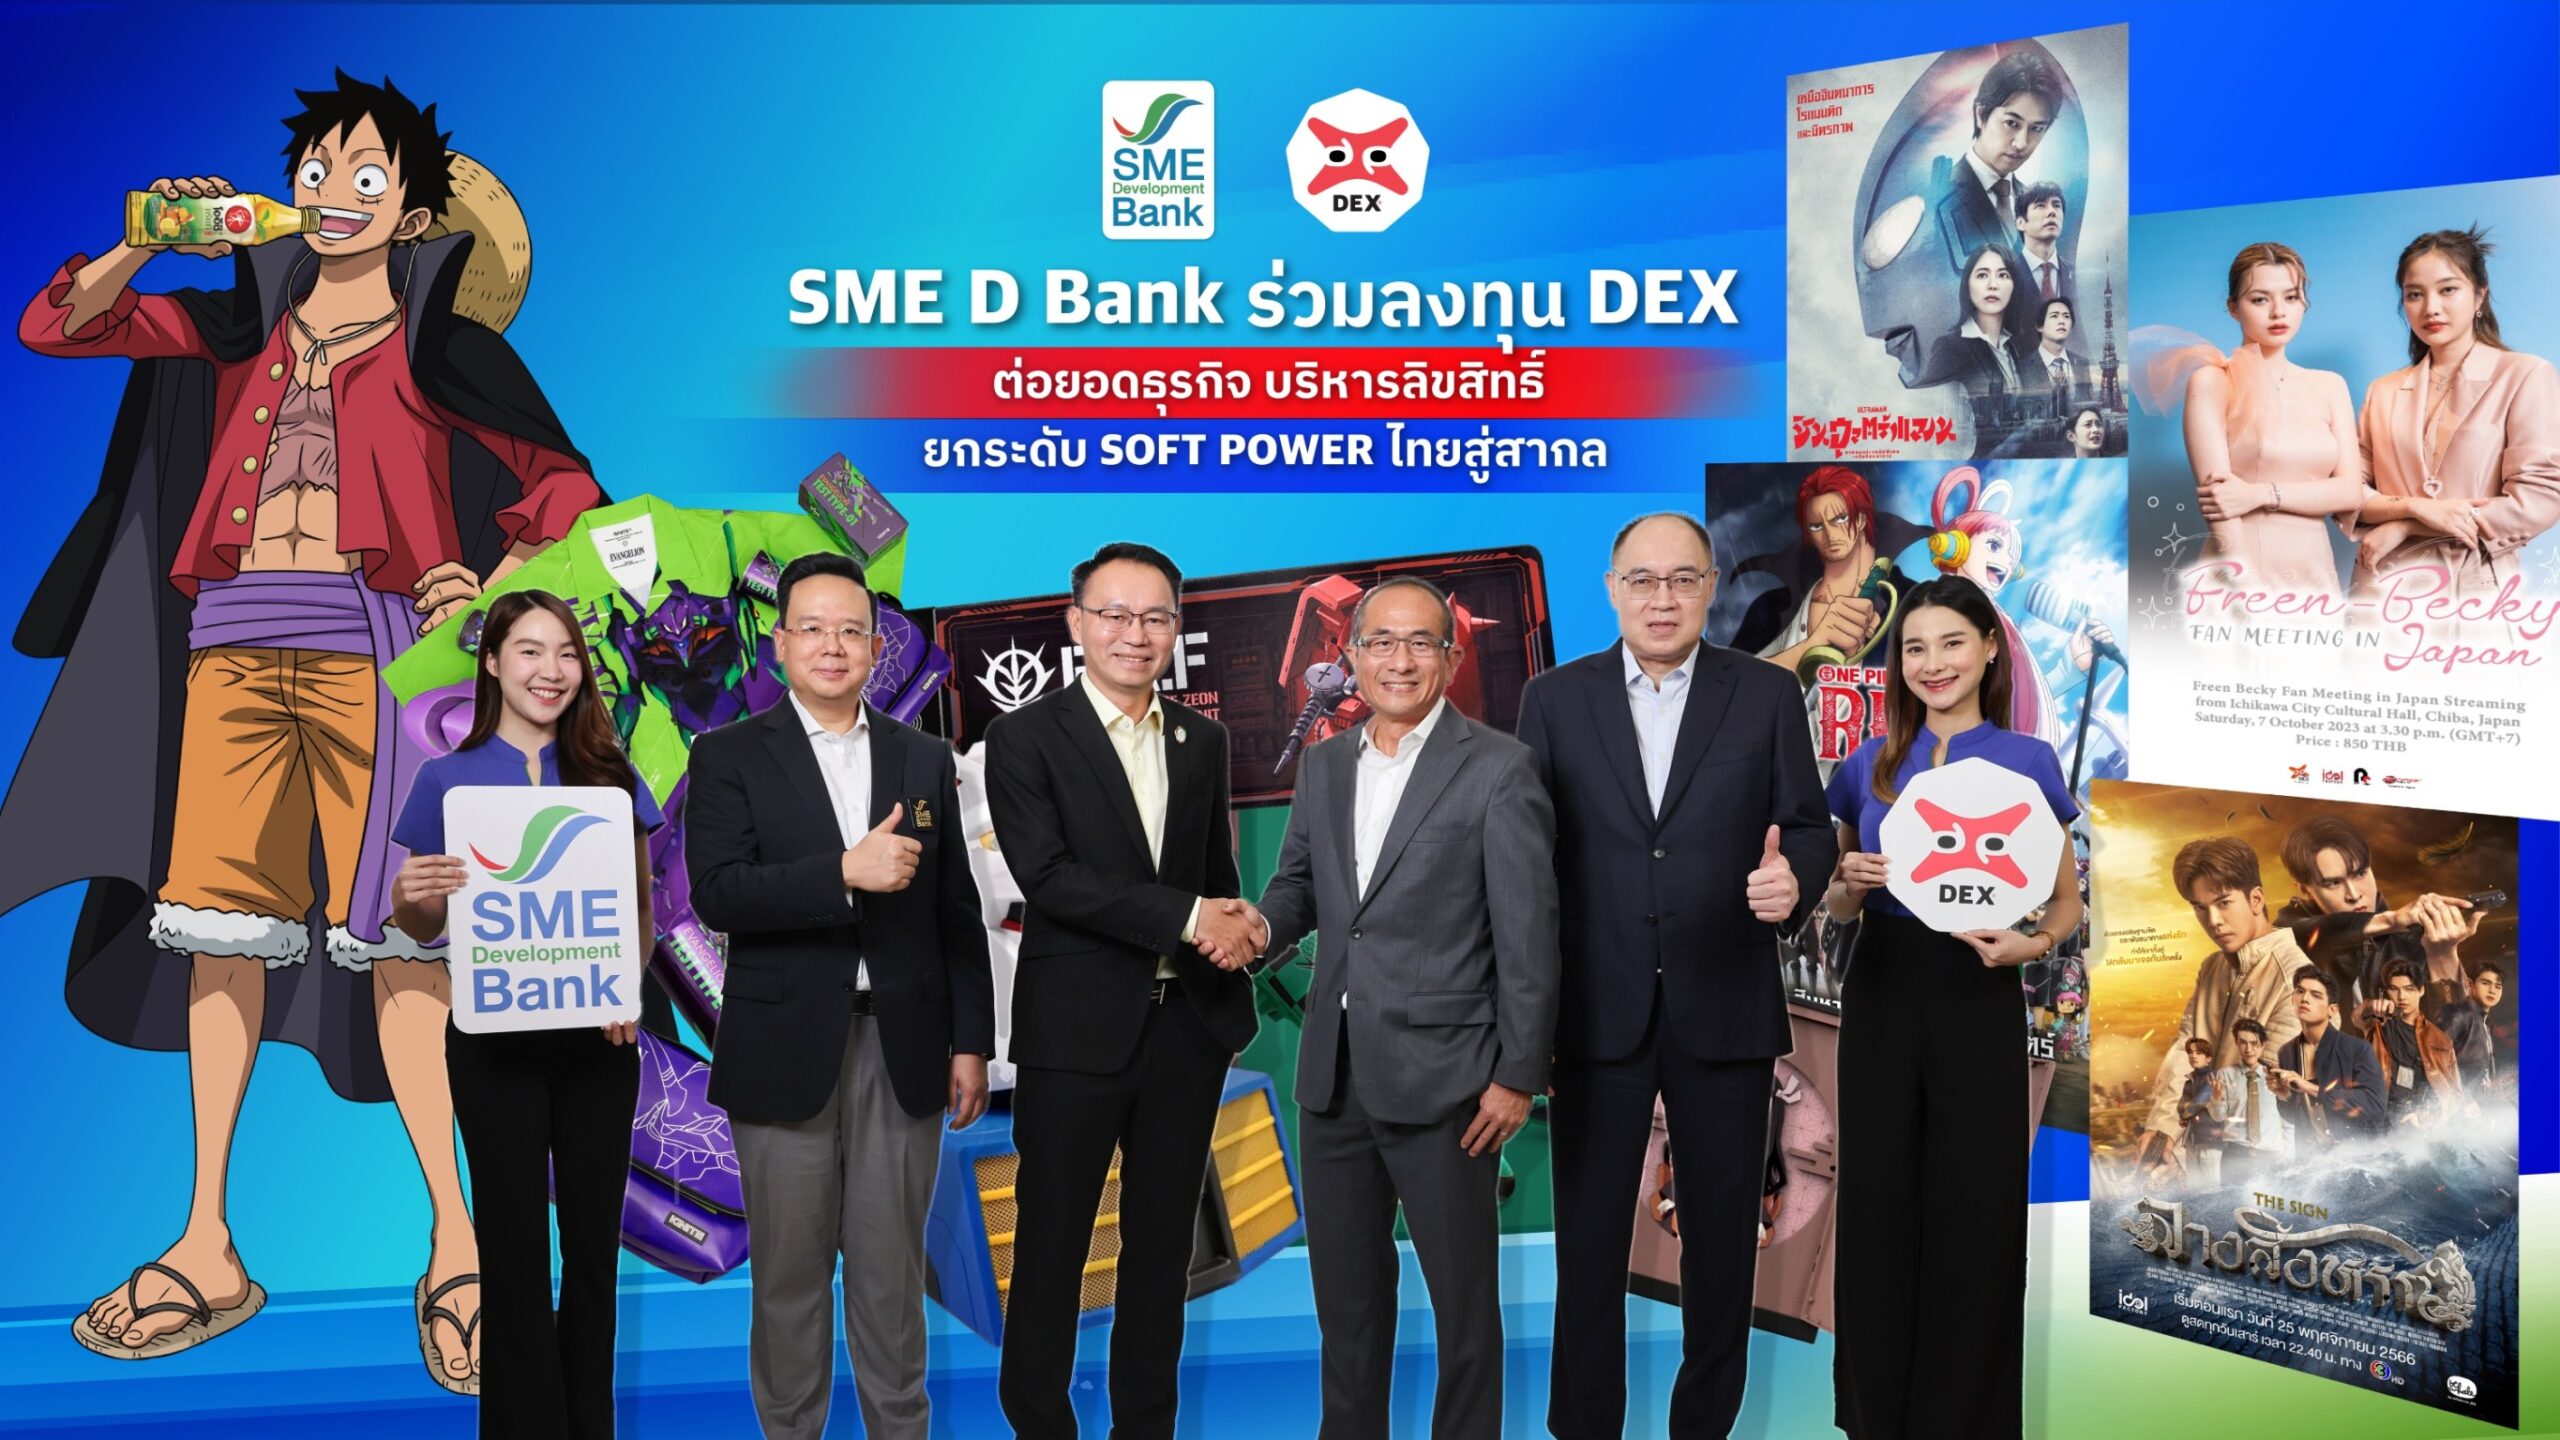 SME D Bank ร่วมลงทุน DEX ต่อยอดธุรกิจบริหารลิขสิทธิ์ ติดปีกซอฟต์พาวเวอร์ไทยโกอินเตอร์